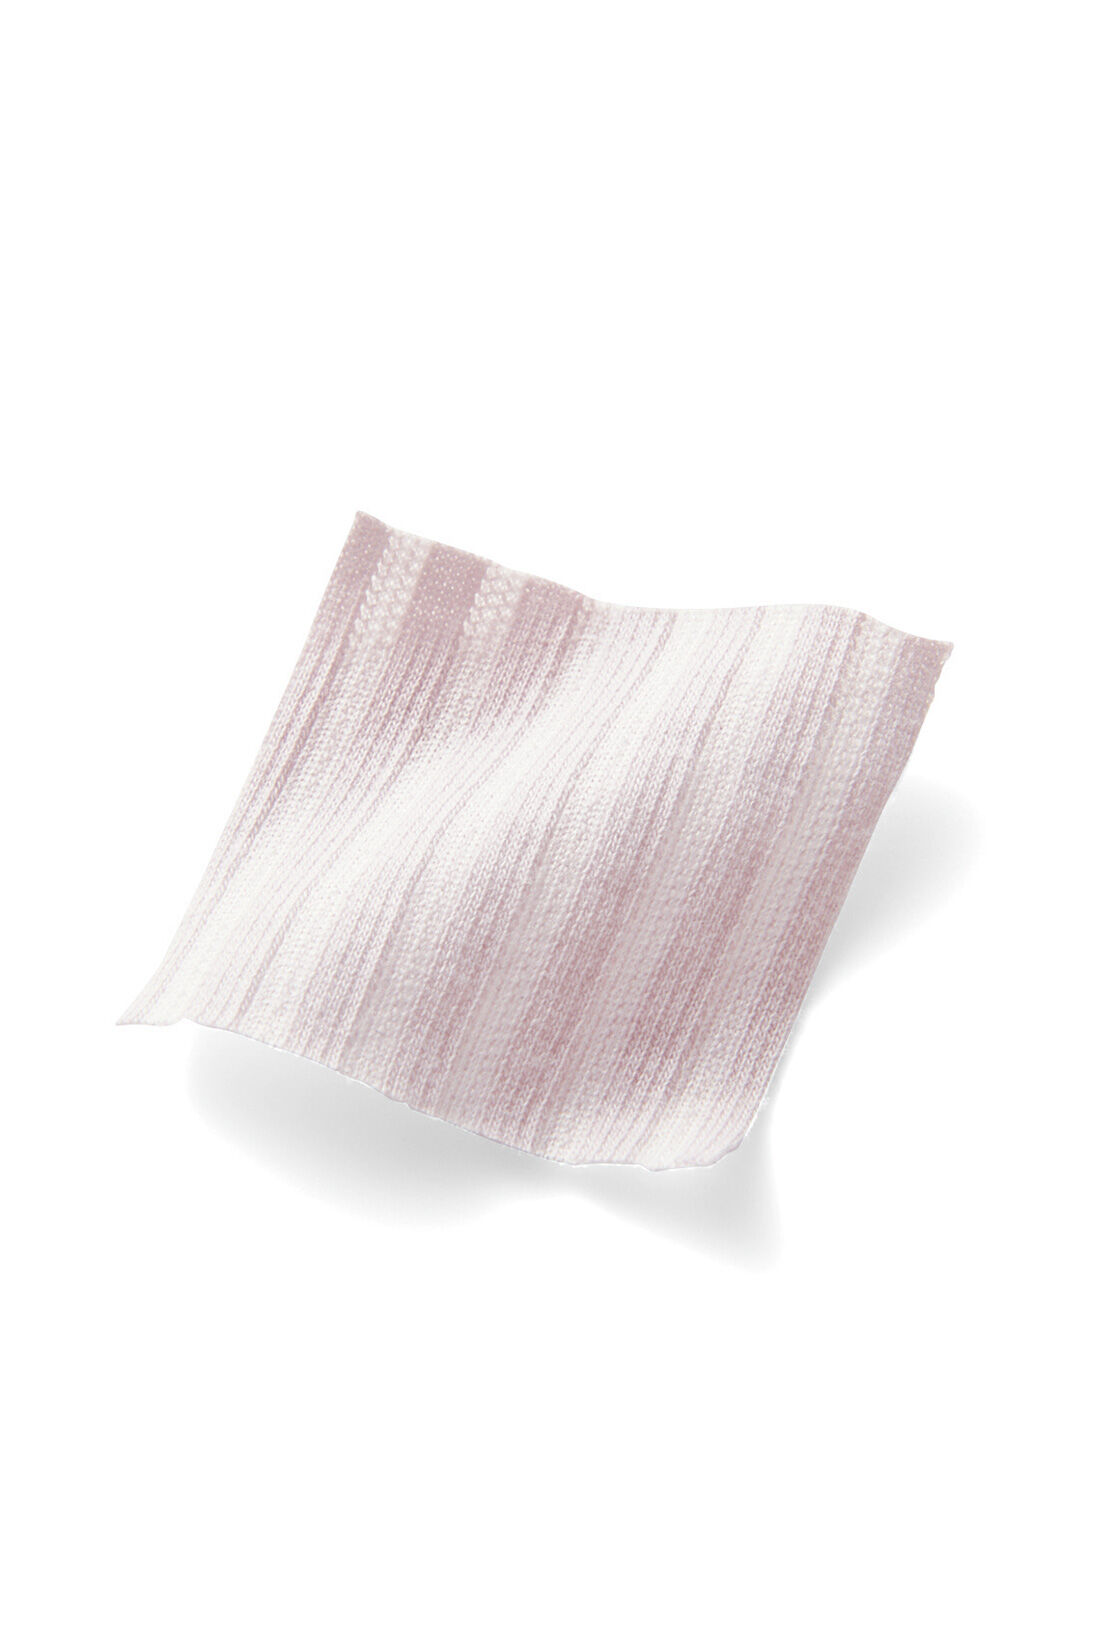 IEDIT|IEDIT[イディット]　抗菌防臭がうれしい きちんとシャツ見えして伸びやかな 美ノビシャツブラウス〈グレイッシュペールピンク〉|ストライプ見えする織り柄がきれいな印象。